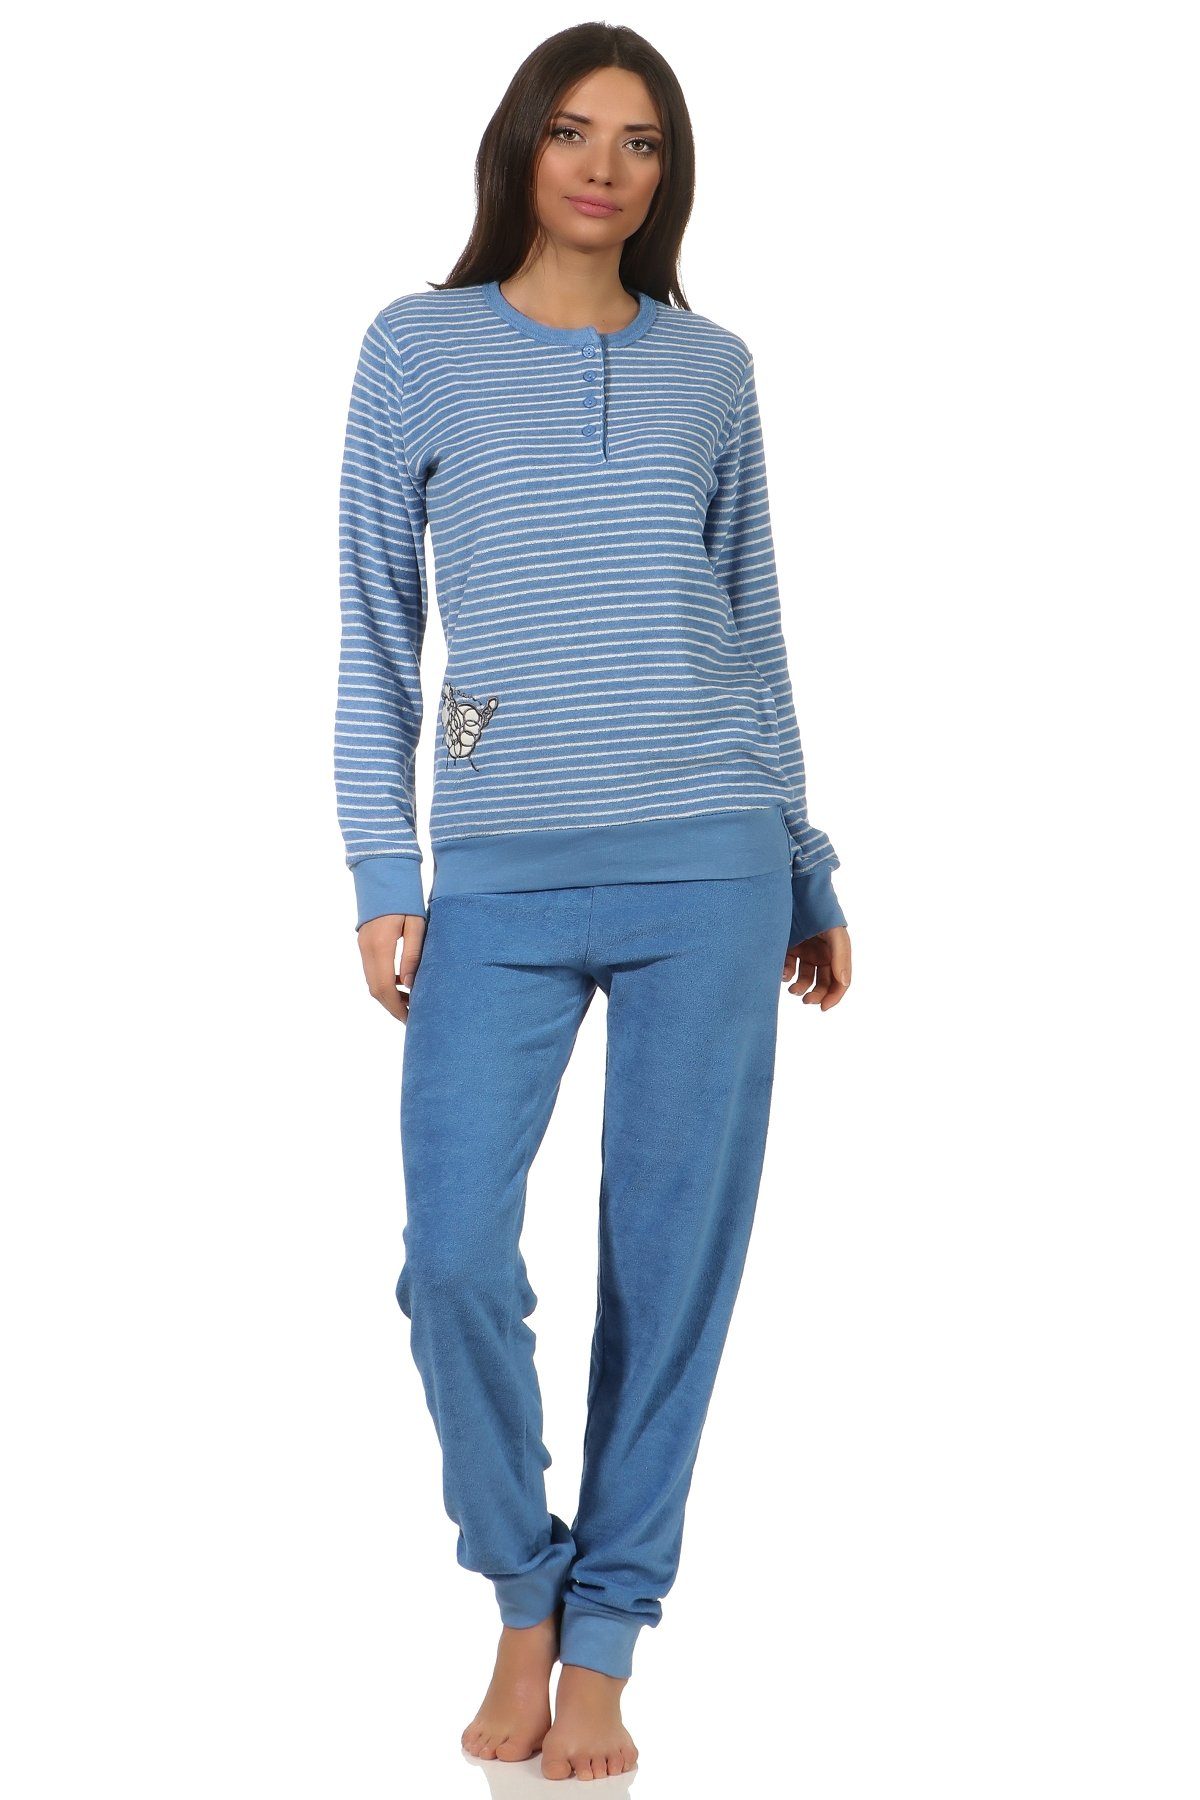 Normann Pyjama Damen Frottee Schlafanzug mit Bündchen und süsser Tier Applikation hellblau